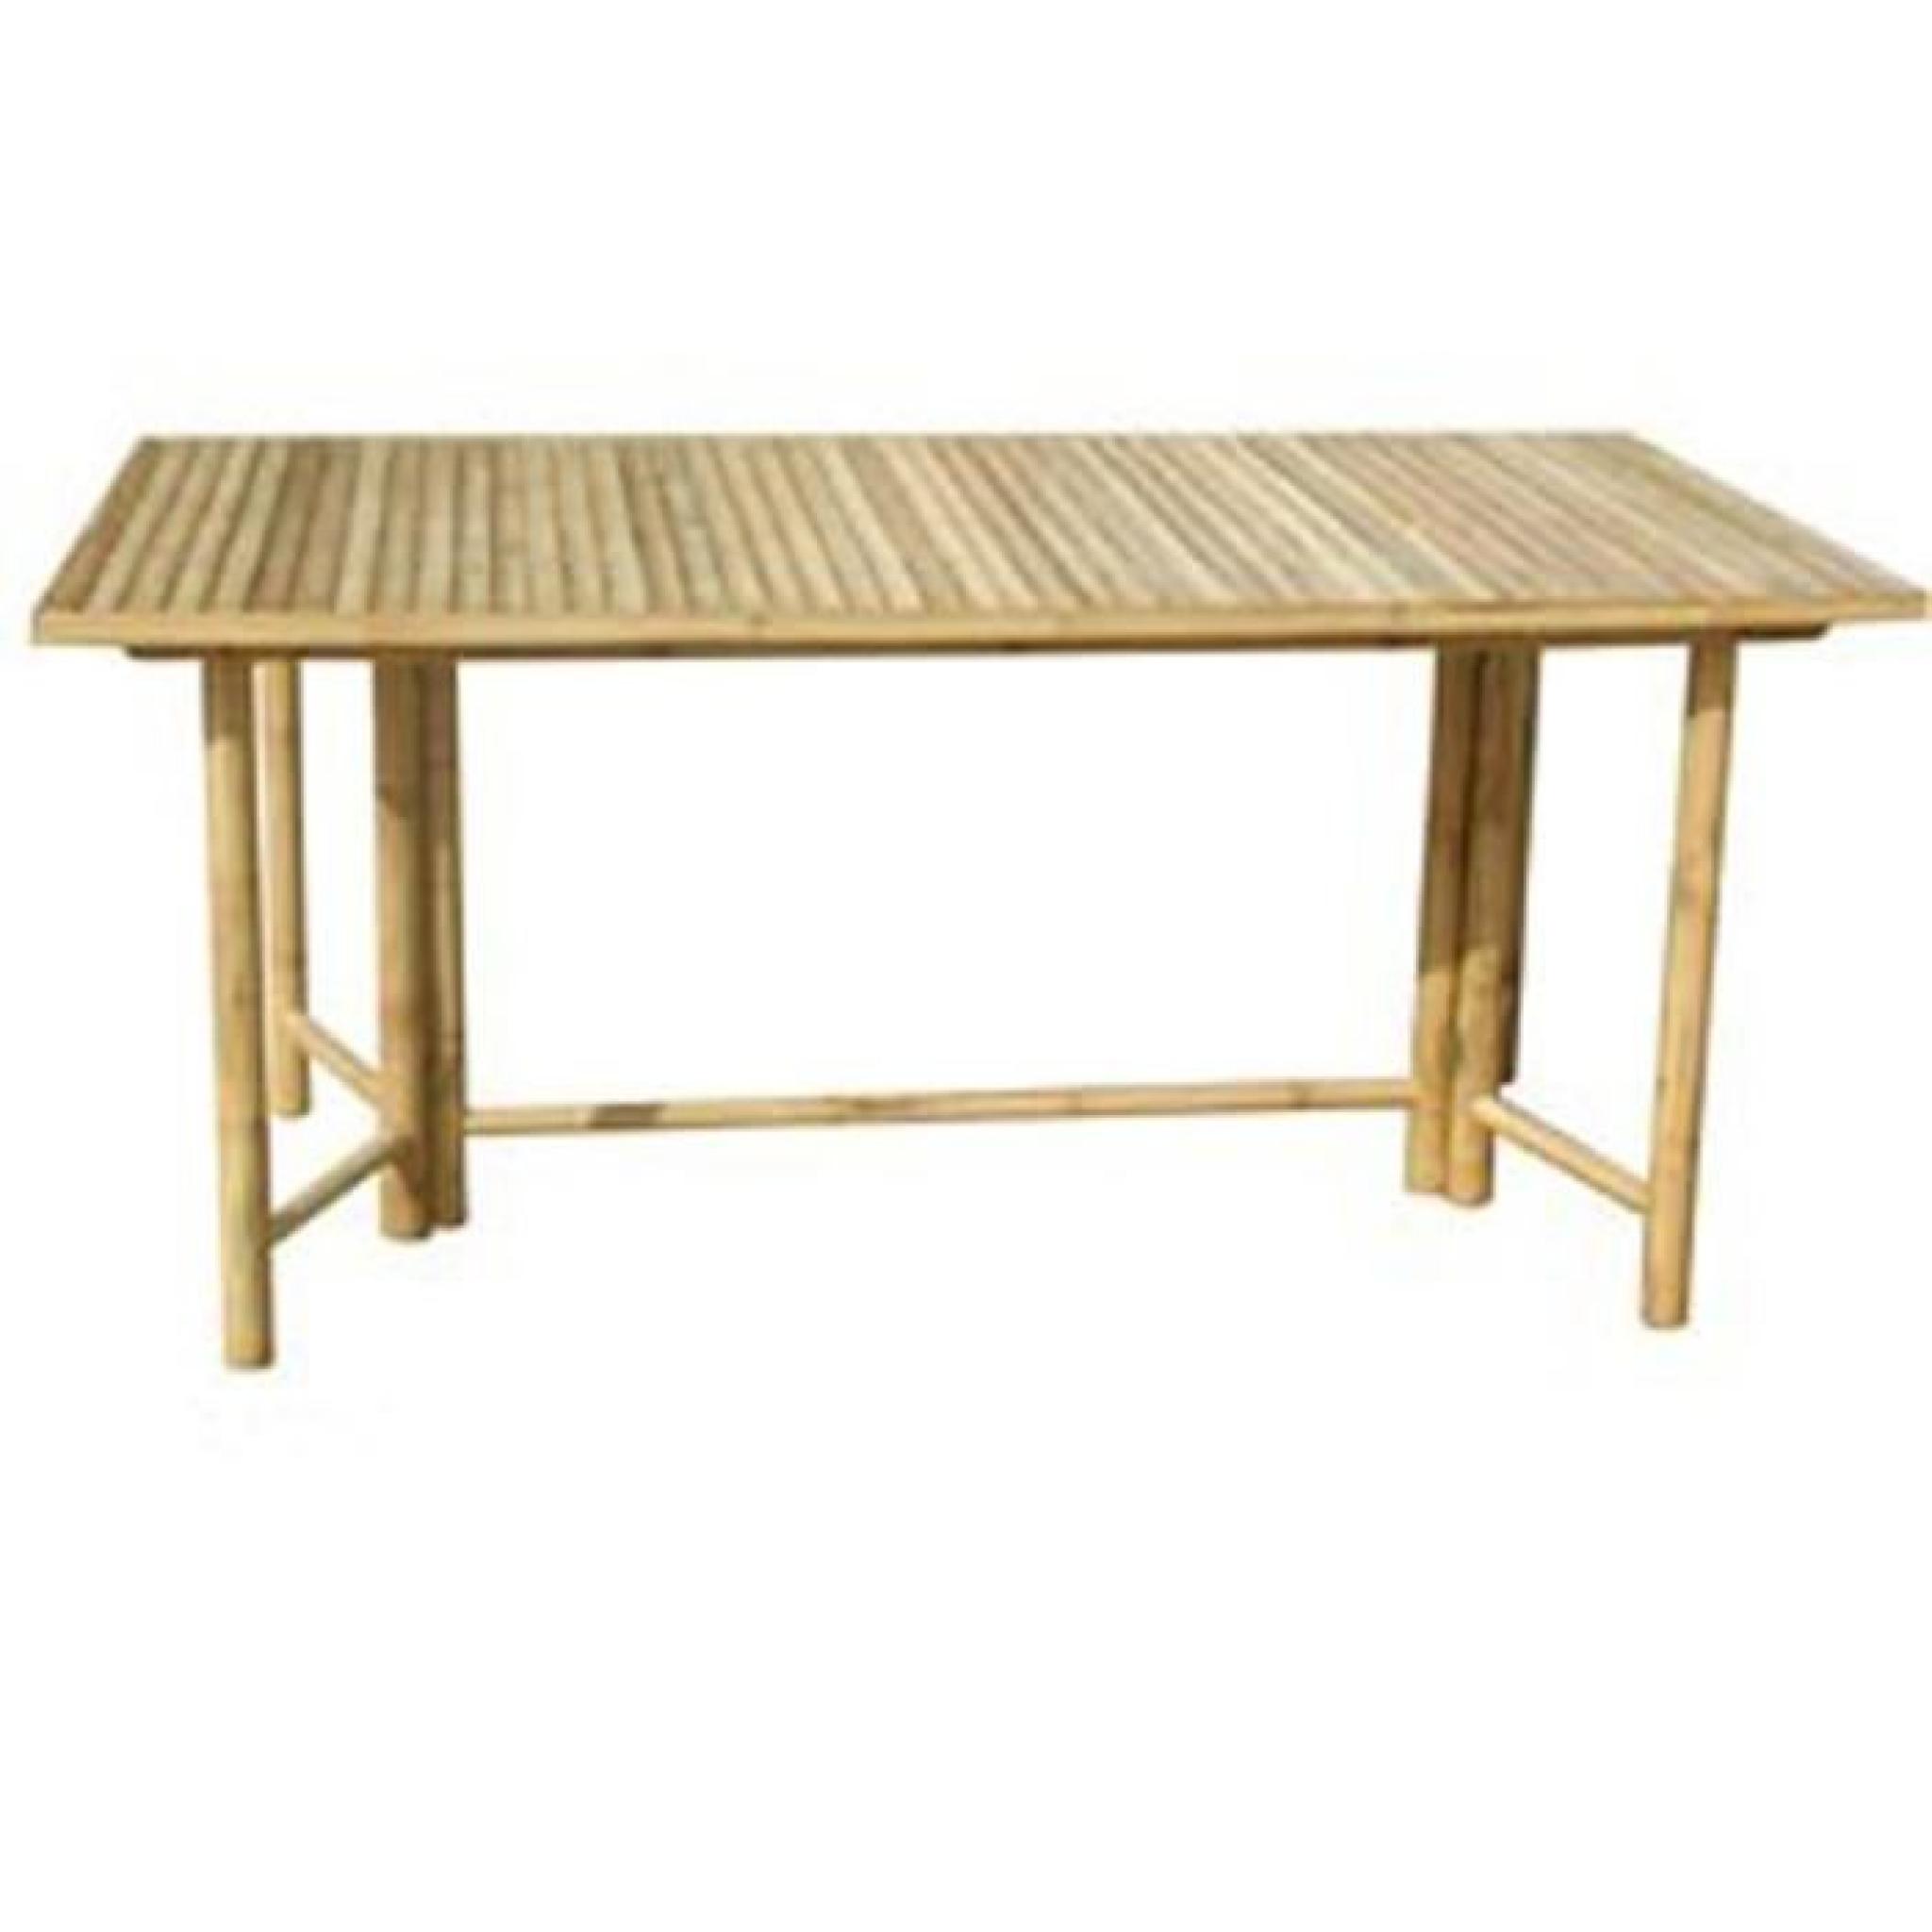 Table rectangulaire pour jardin en bambou - Dim : H 75 x L 150 x P 90 cm pas cher